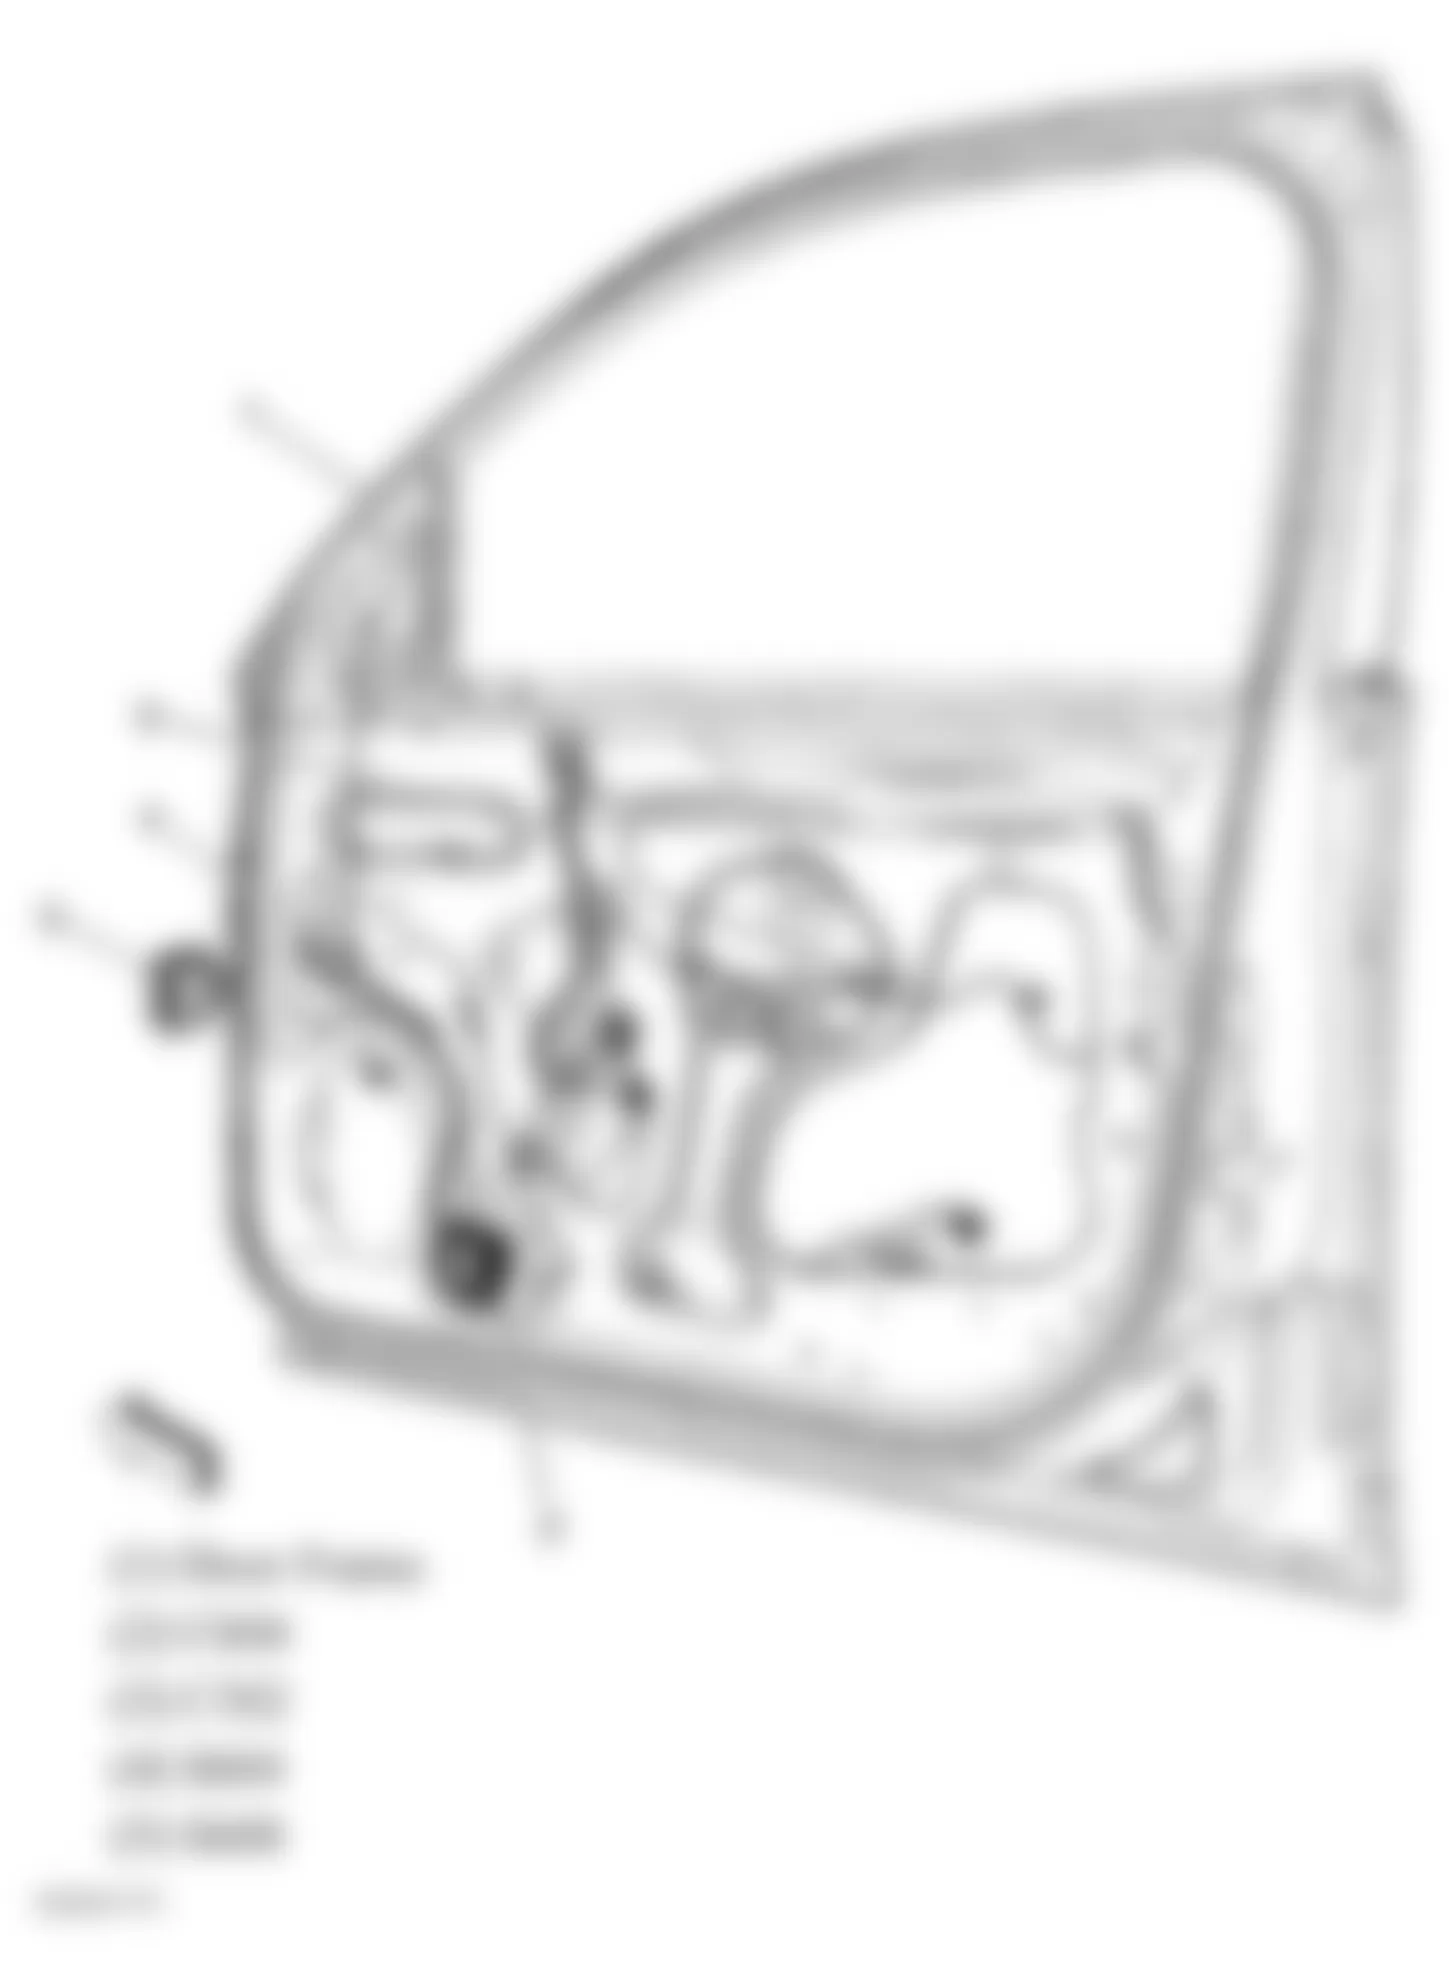 Chevrolet Monte Carlo LT 2006 - Component Locations -  Front Passenger Door Harness (Sedan)